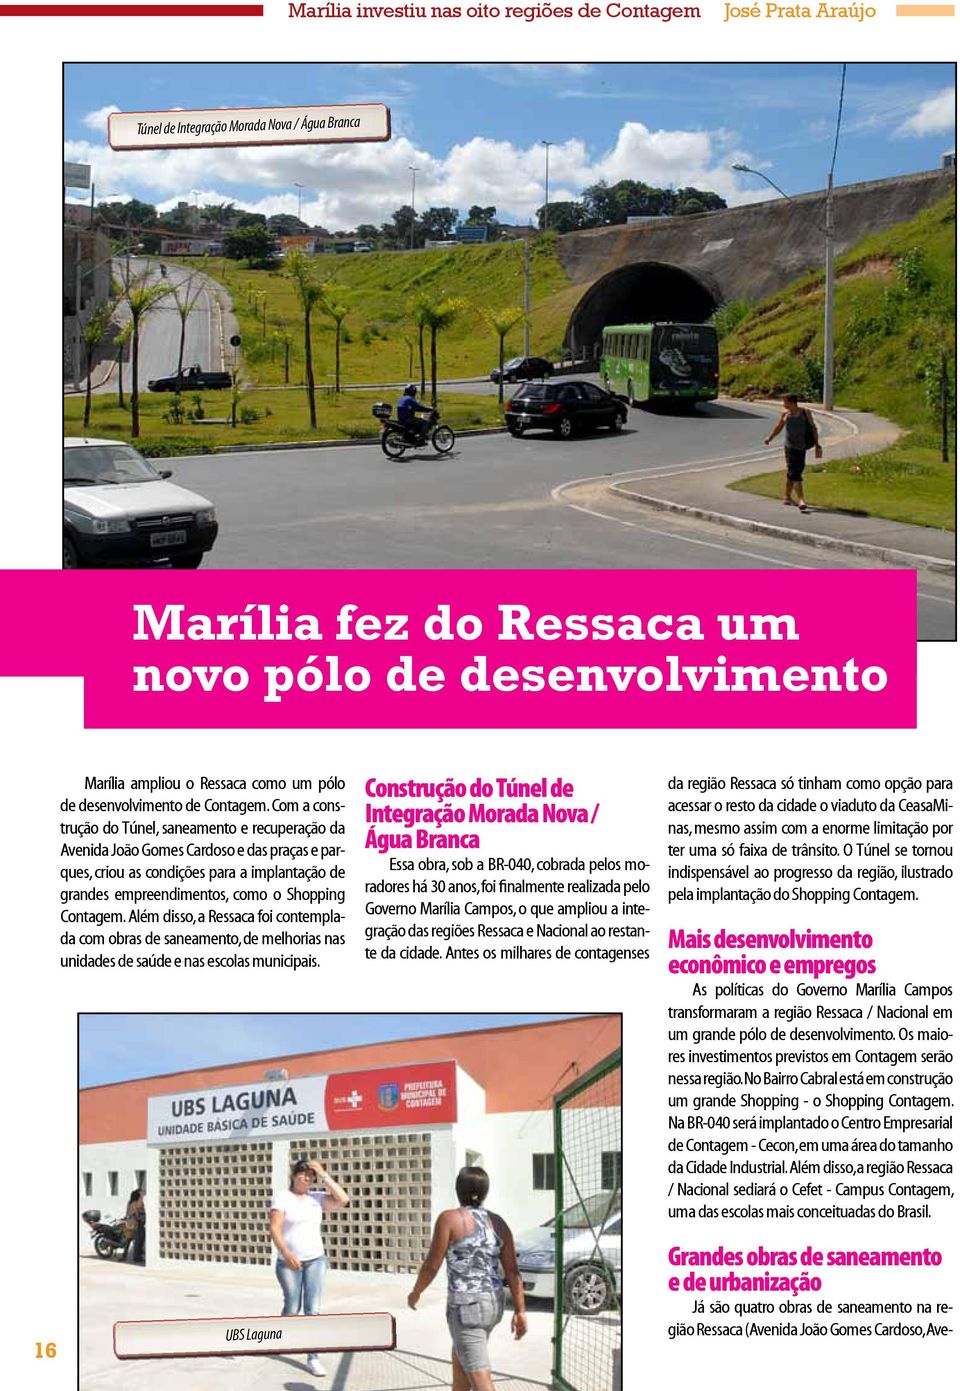 Com a construção do Túnel, saneamento e recuperação da Avenida João Gomes Cardoso e das praças e parques, criou as condições para a implantação de grandes empreendimentos, como o Shopping Contagem.